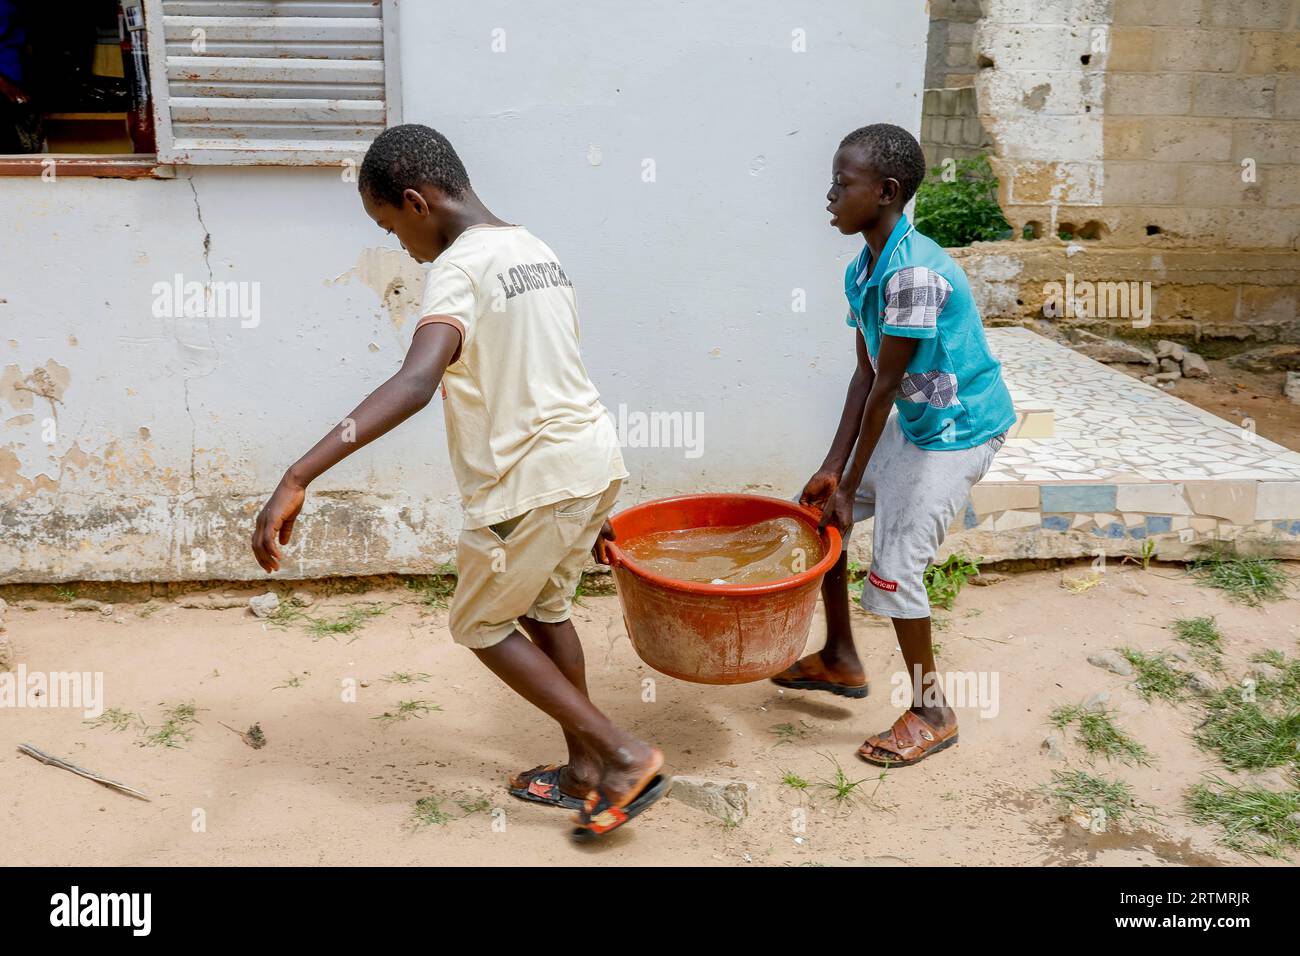 Boys fetching water in Thiaoune, Senegal Stock Photo